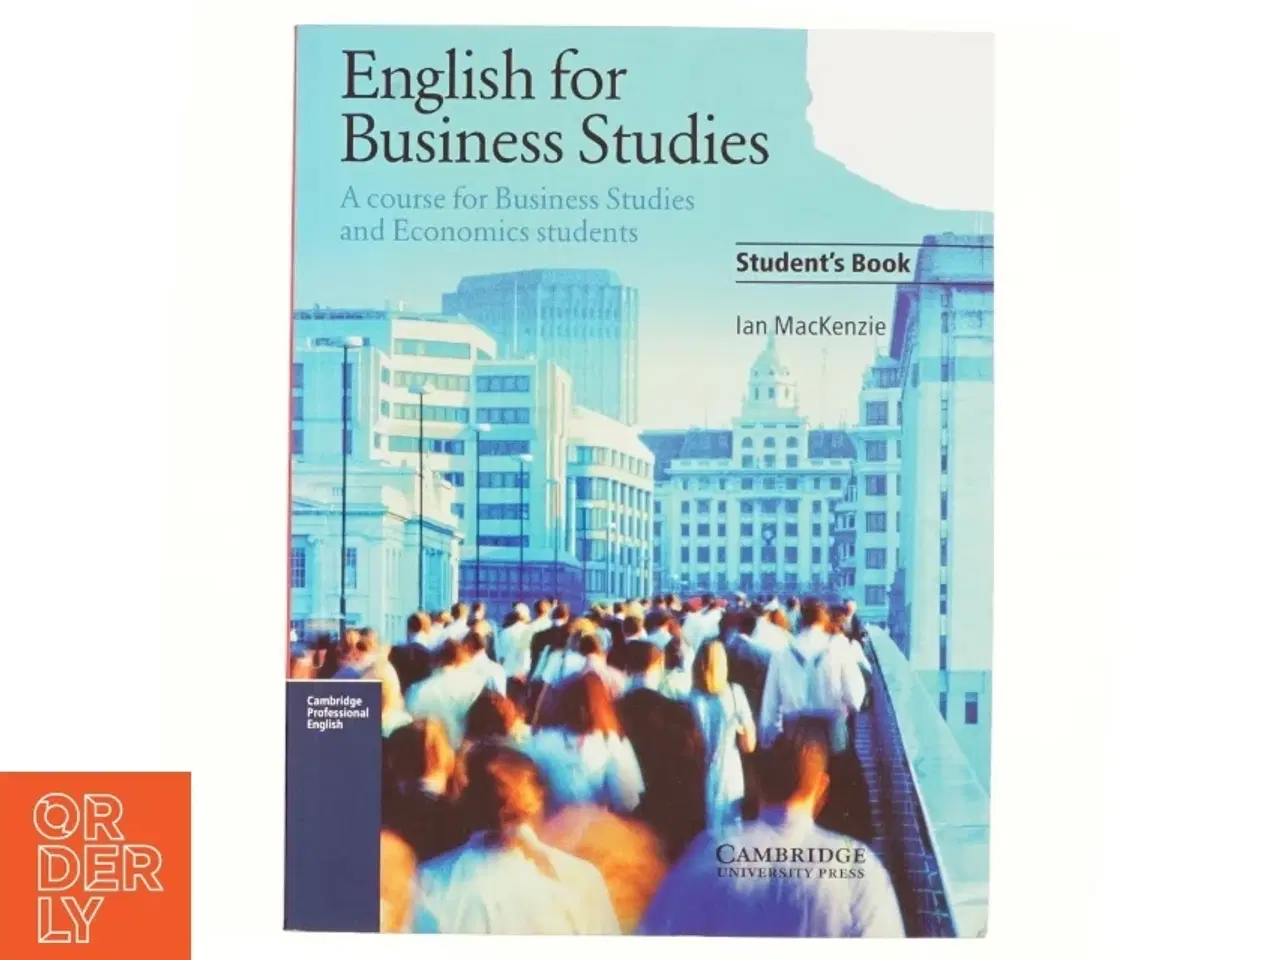 Billede 1 - English for Business Studies Student's Book af Ian MacKenzie (Bog)